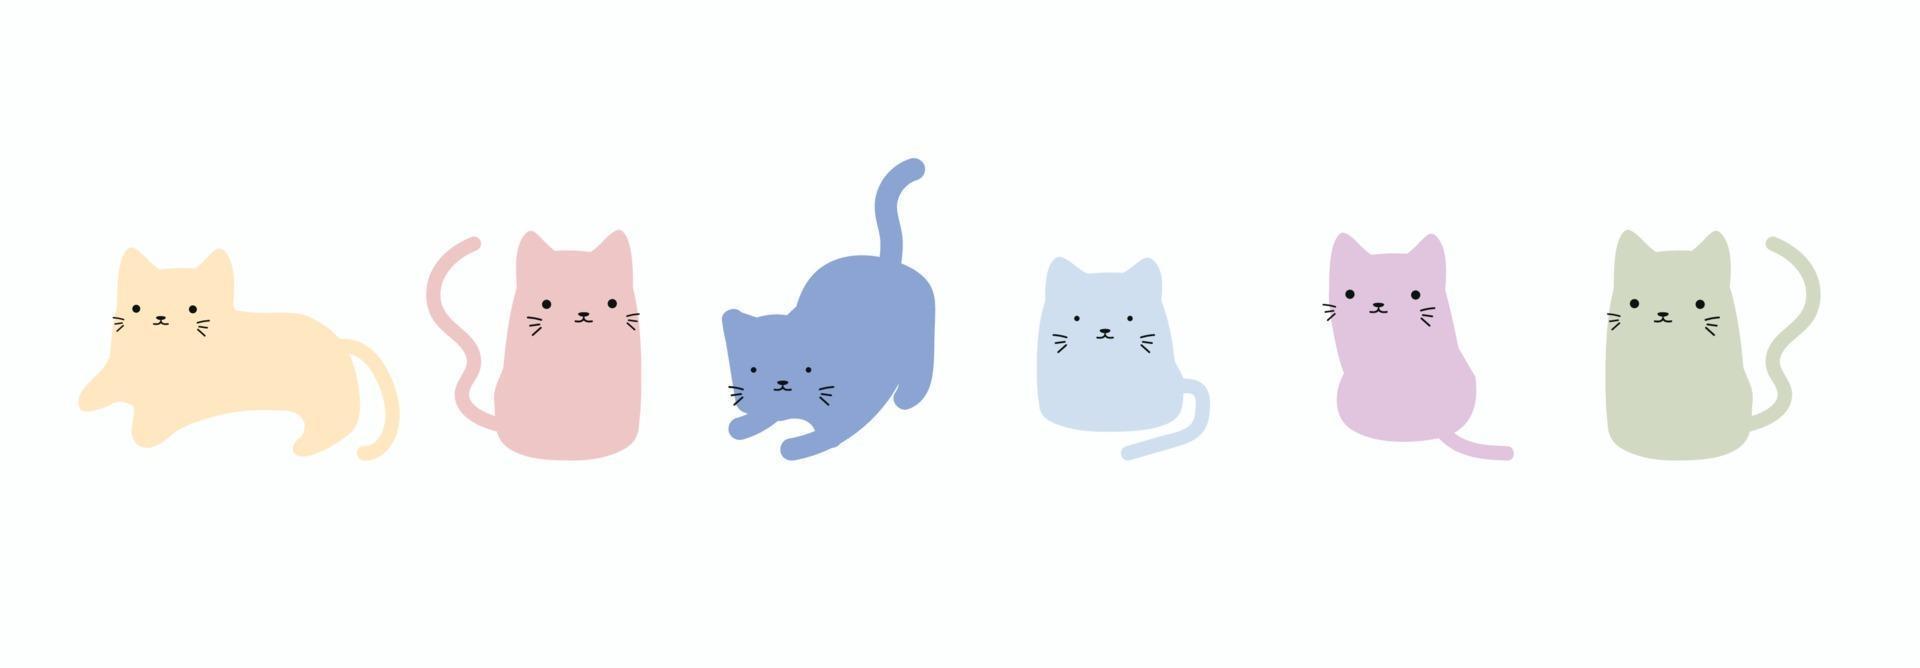 schattige kat doodle vector set